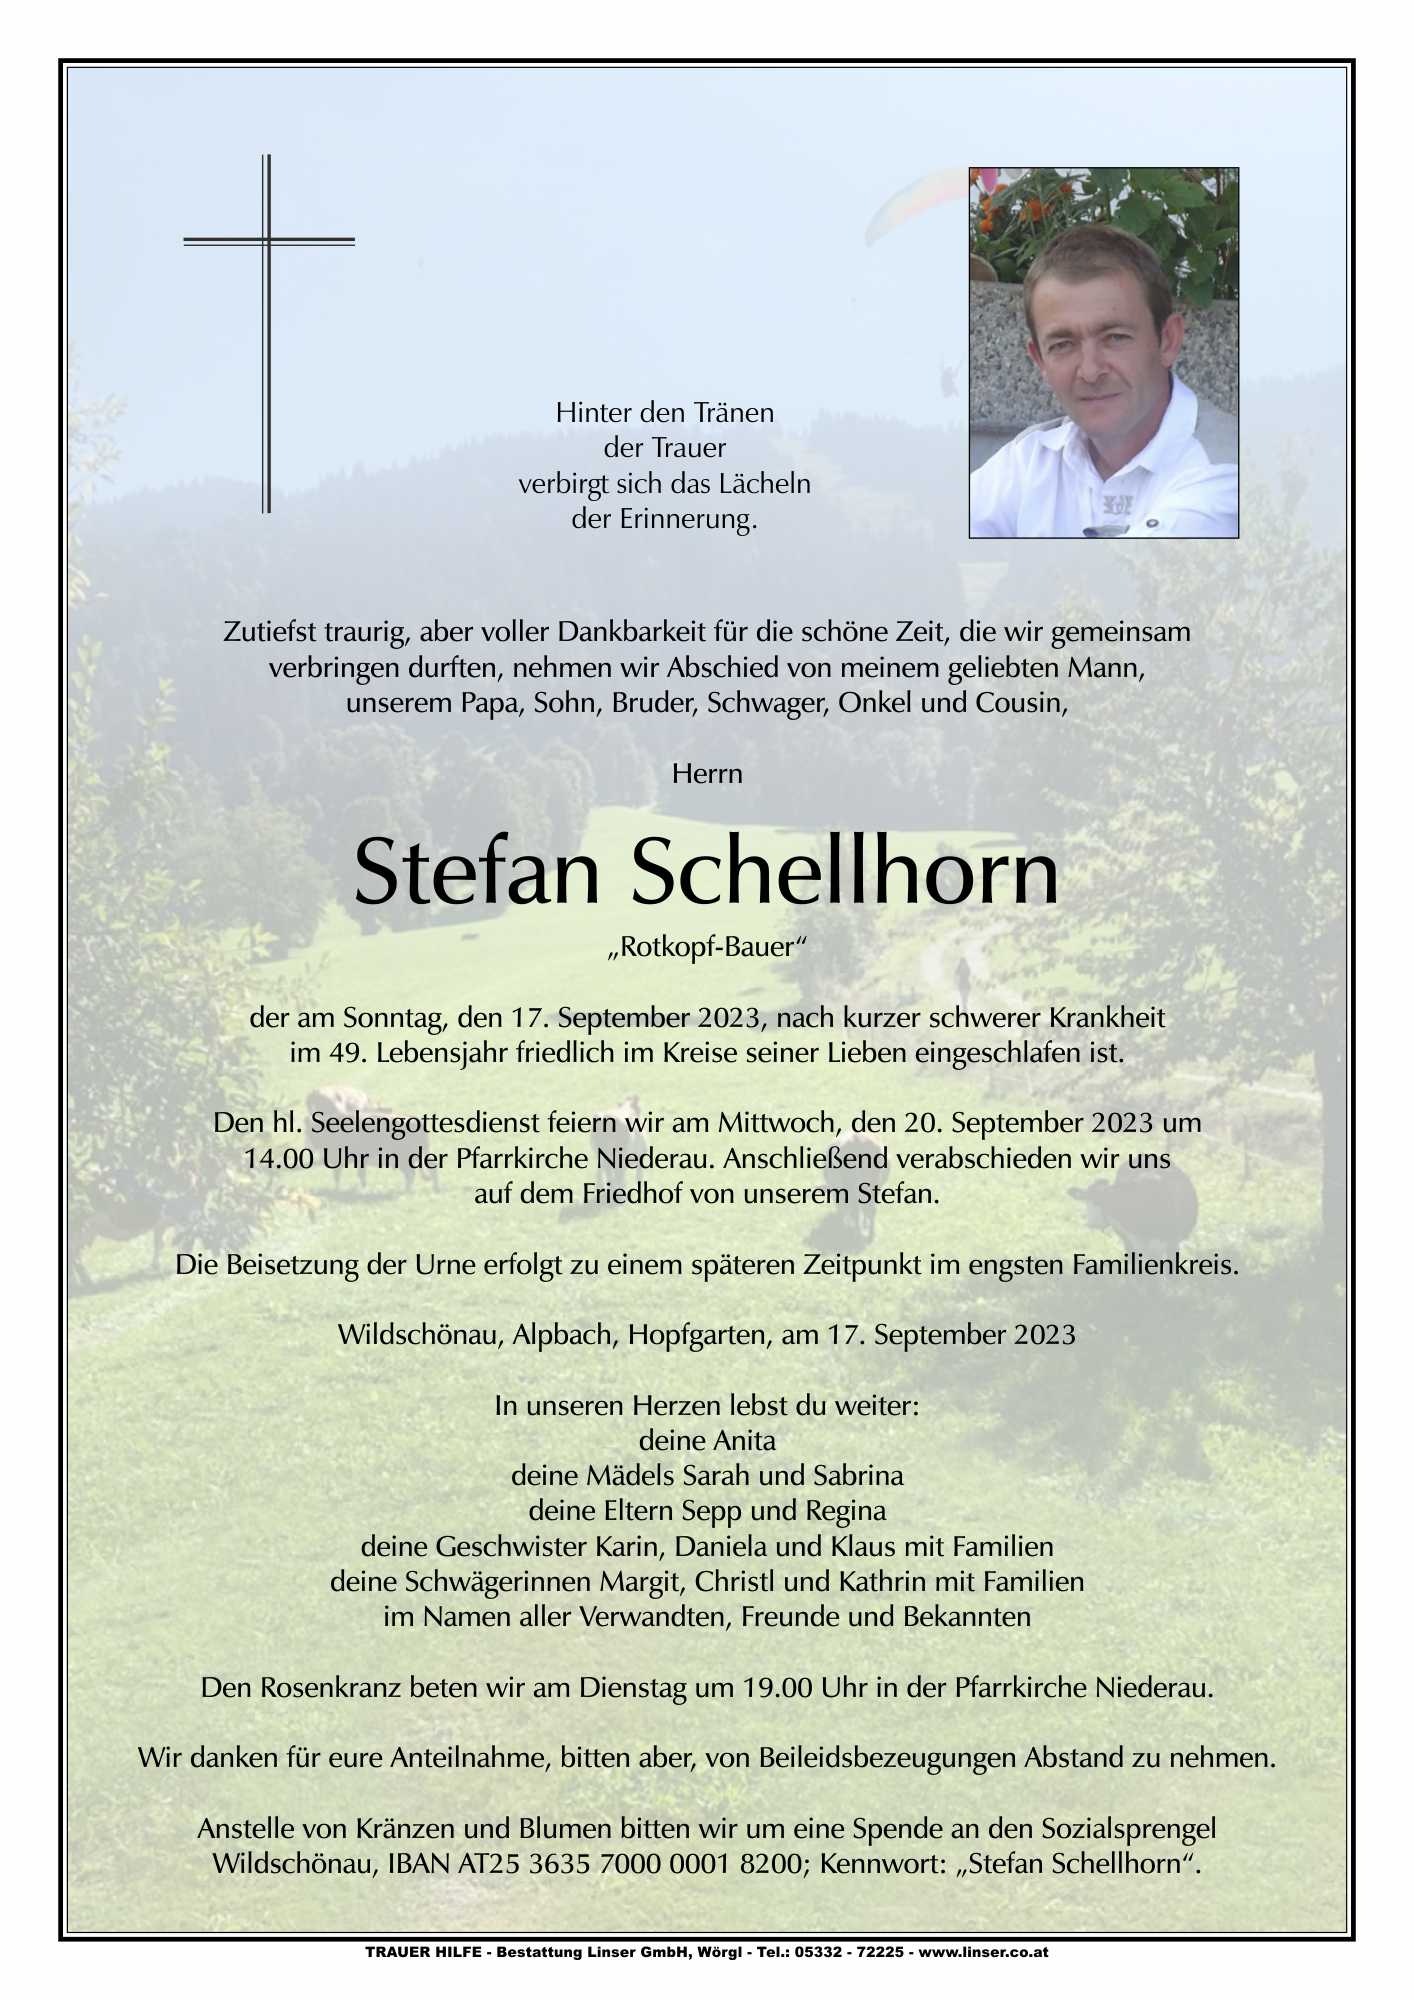 Stefan Schellhorn